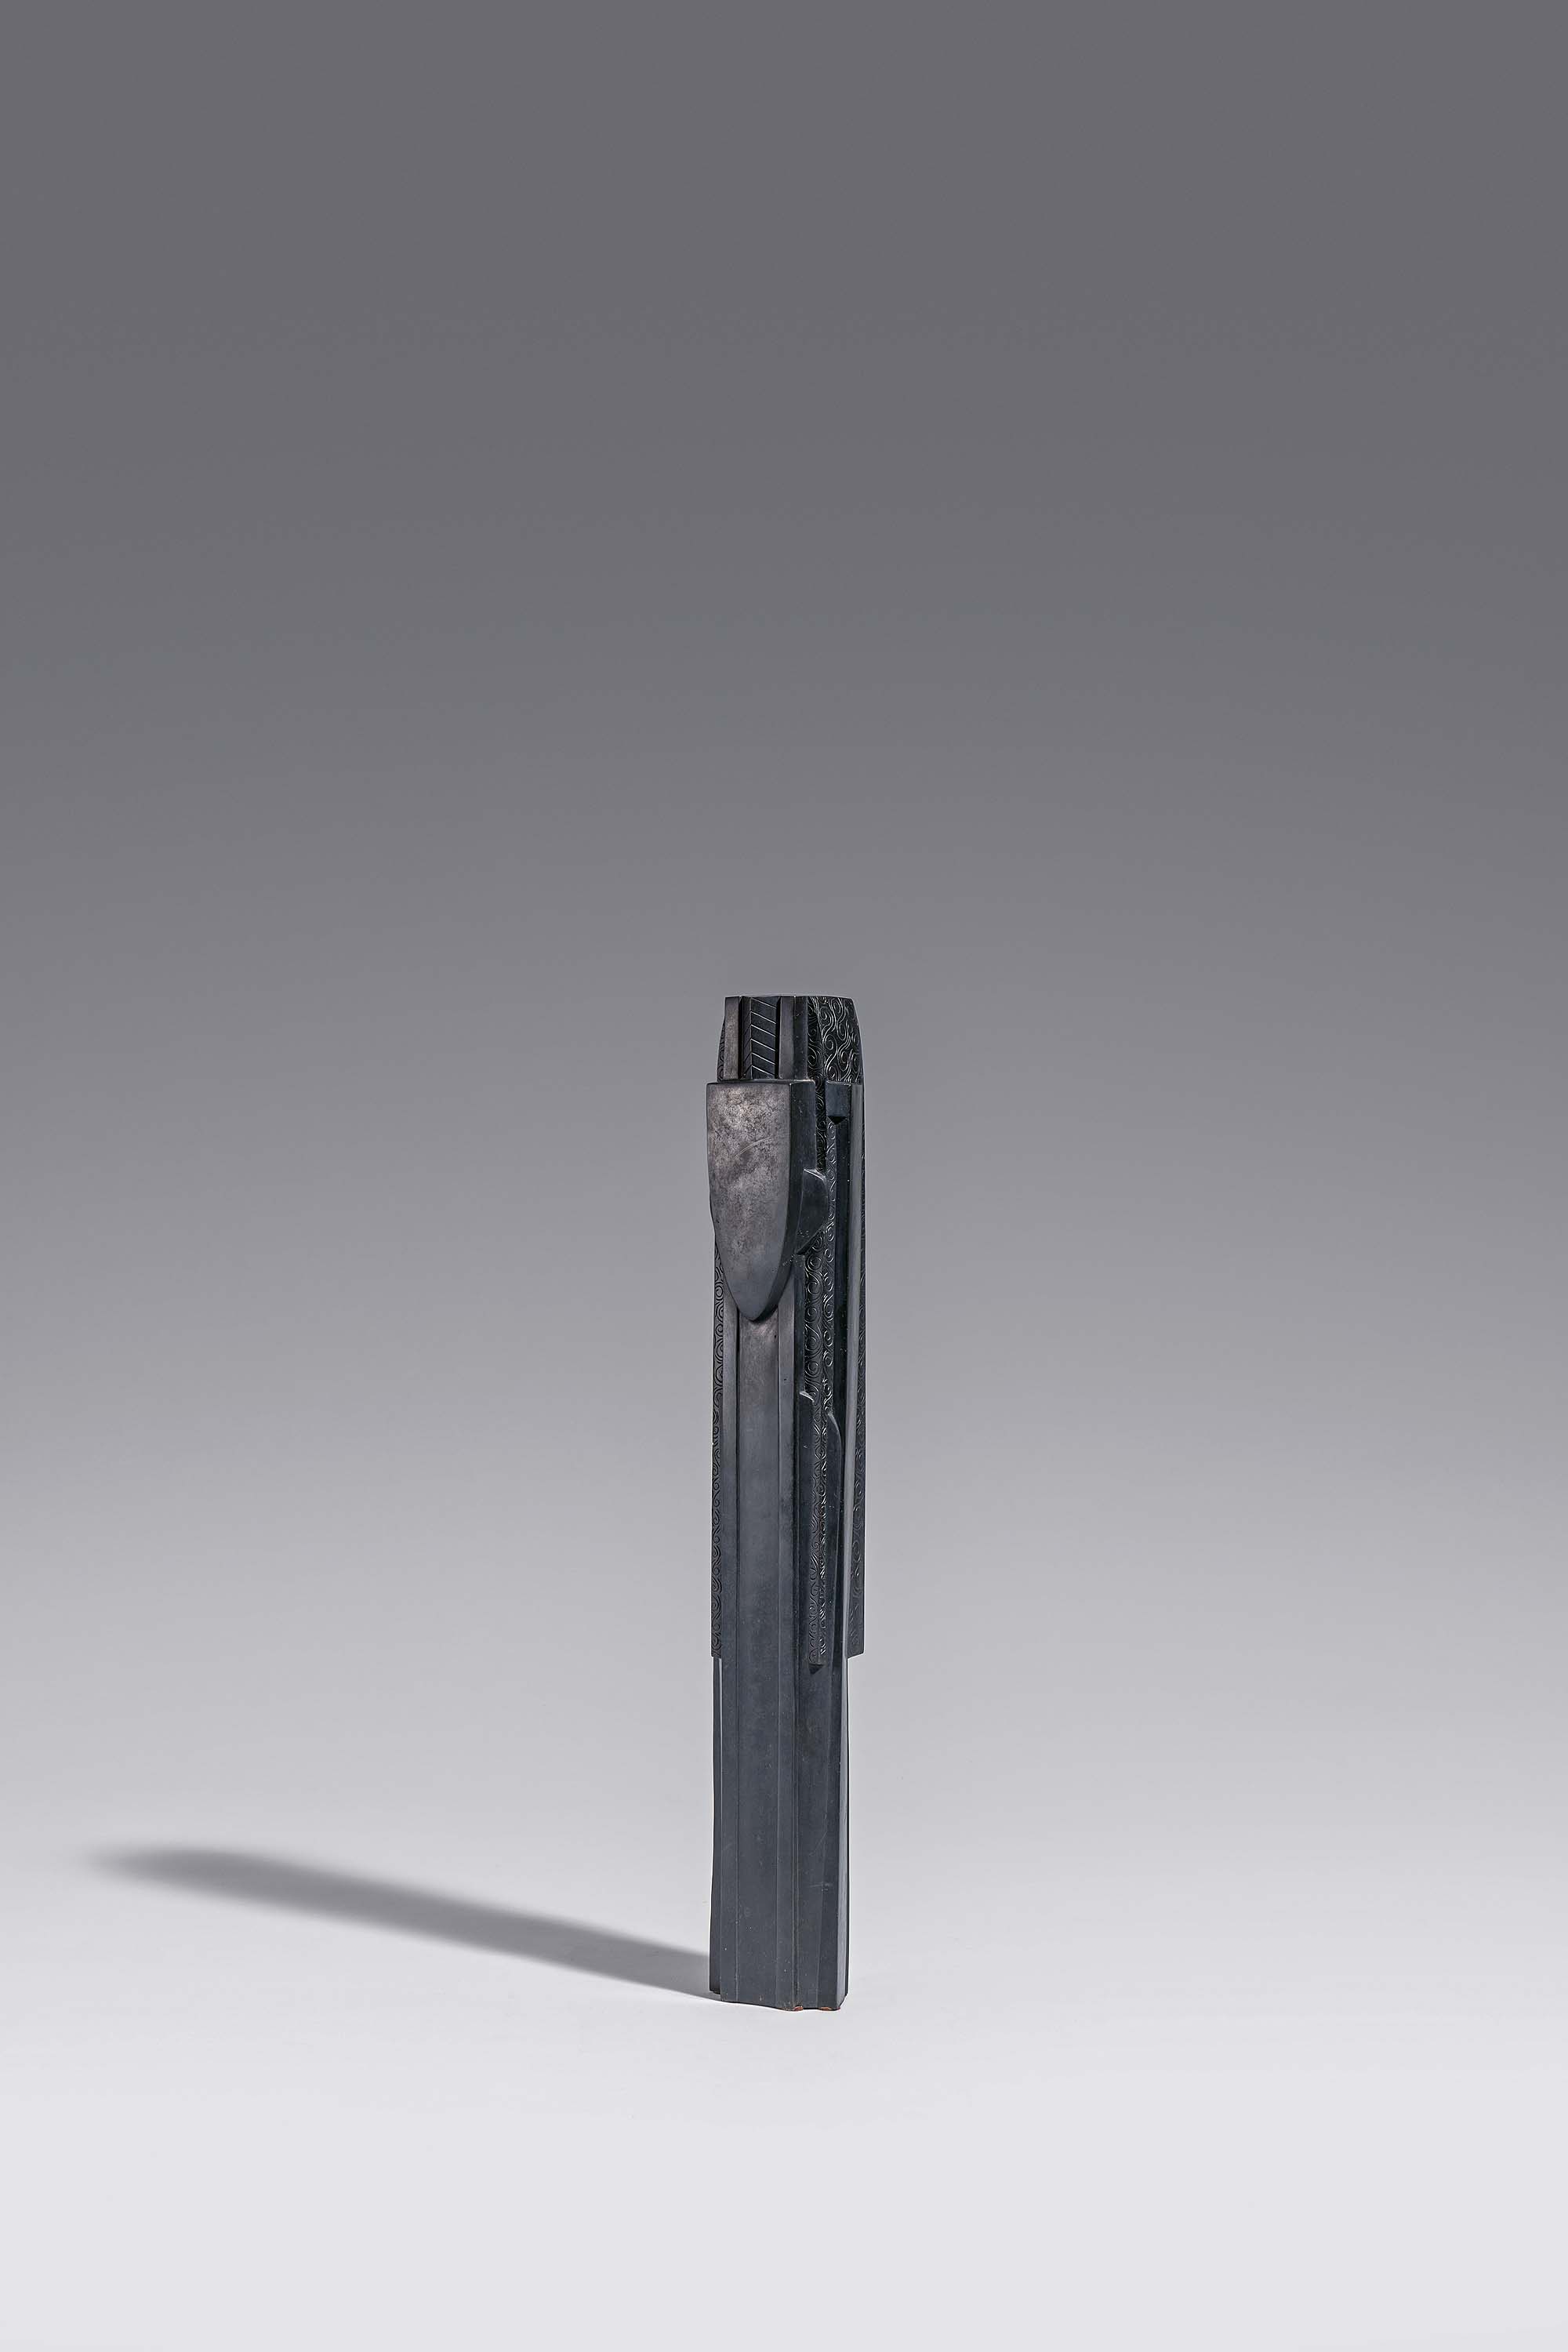 Joseph Csaky - Figure Figure abstraite, 69721-4, Van Ham Kunstauktionen